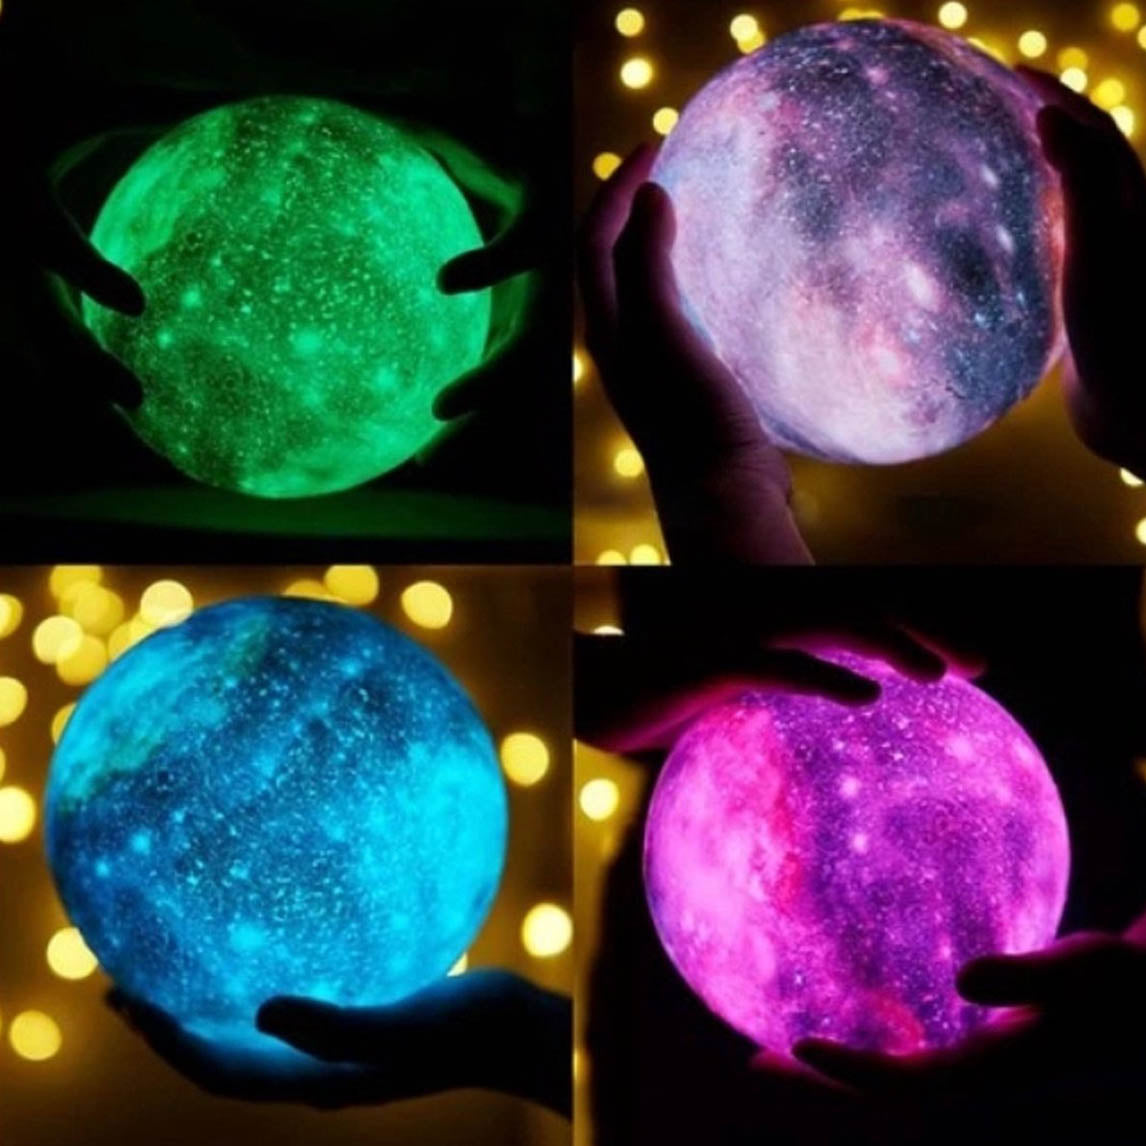 Ariko Veilleuse 3D lune - lumière étoile - 15 cm - Lampe à poser - Batterie 15 à 89 heures - 16 couleurs LED dimmables et Télécommande